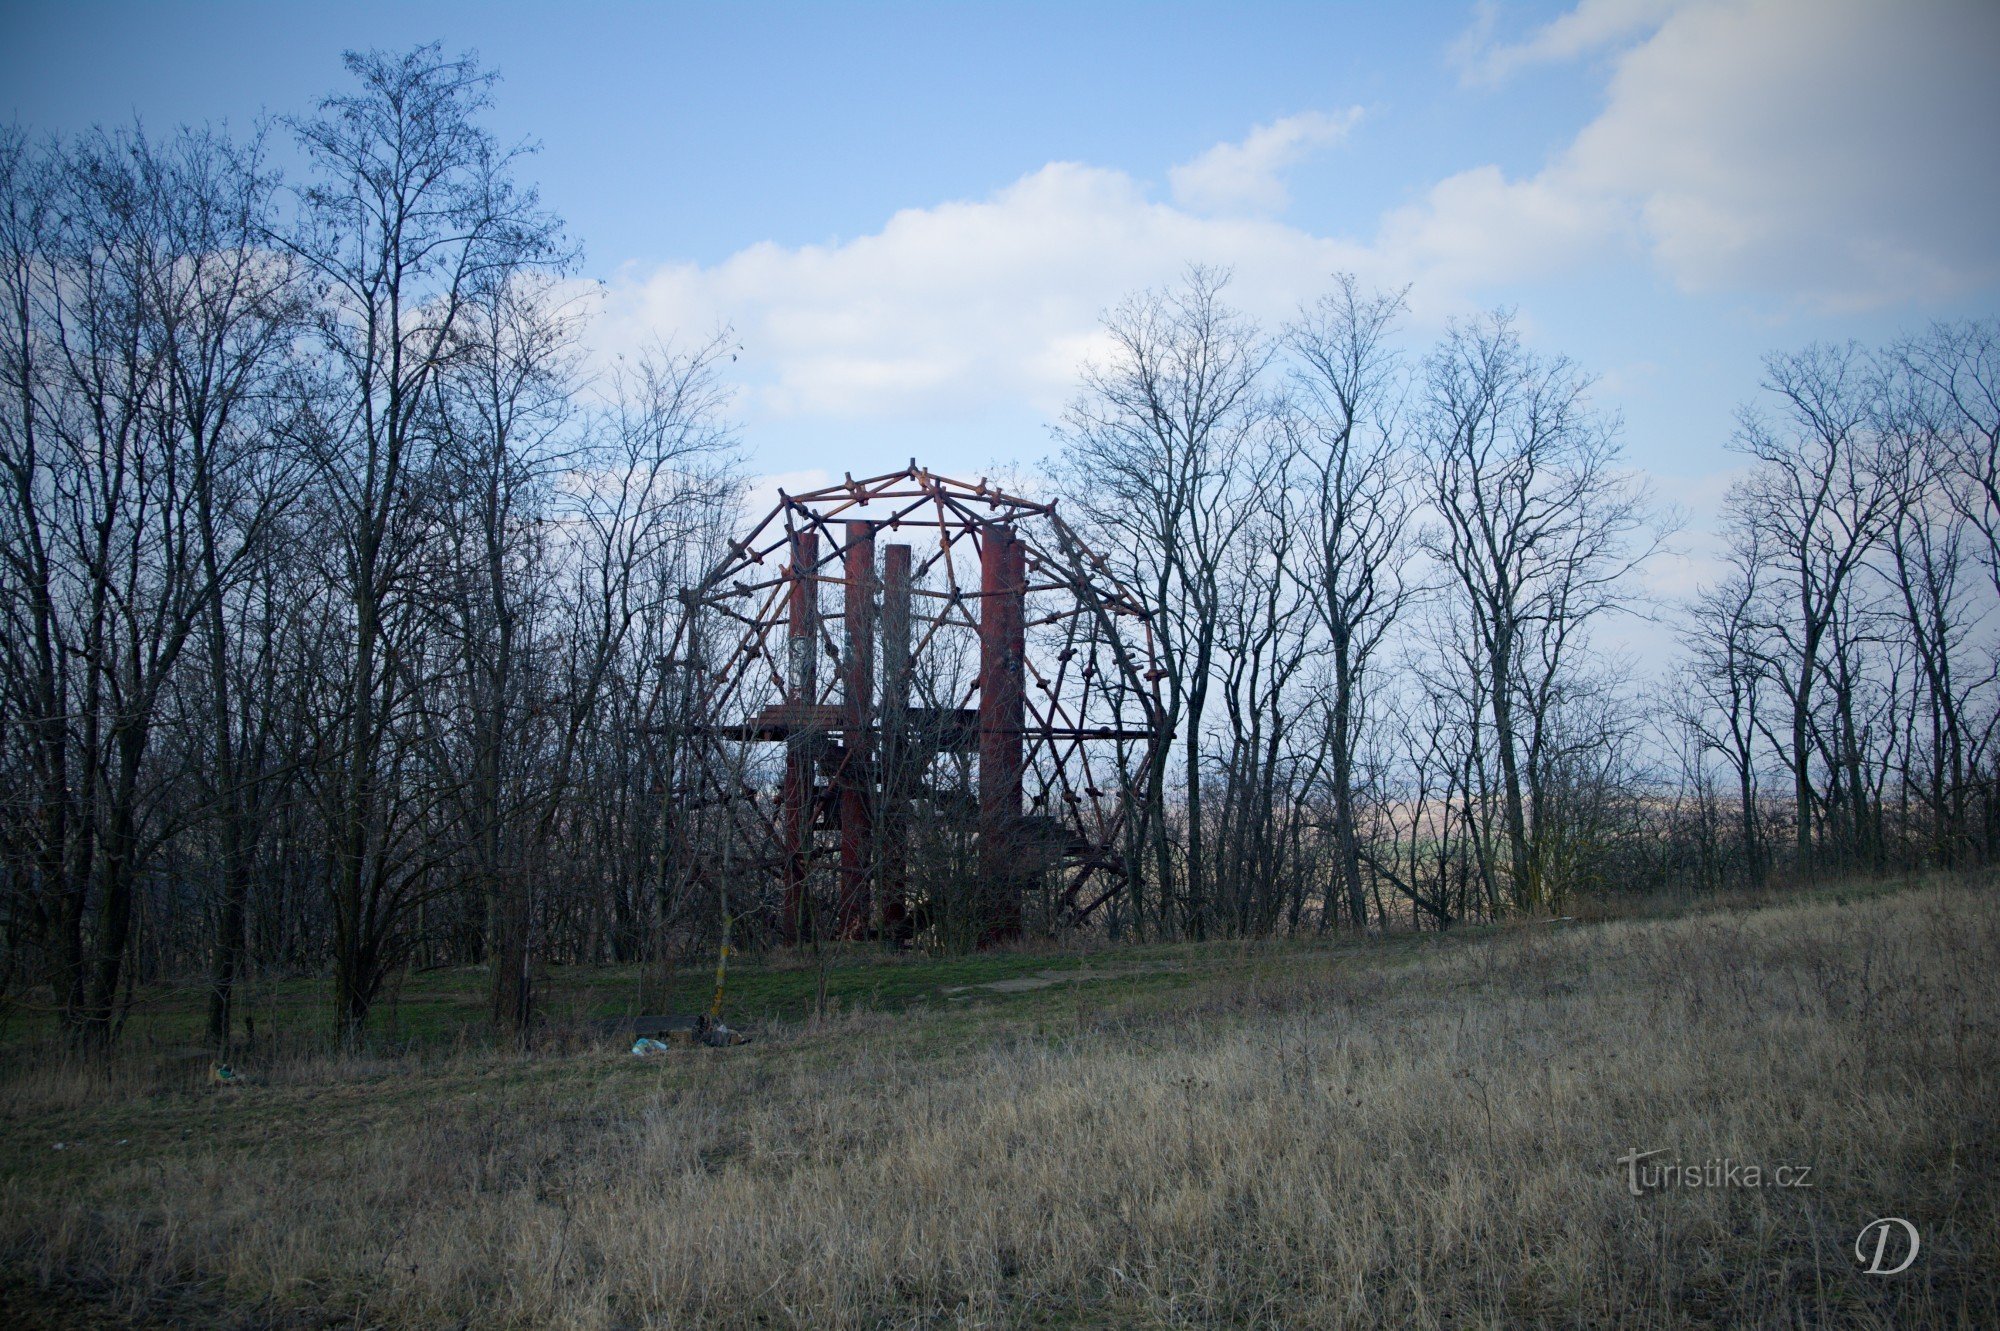 Tượng đài trên đồi Čertoraj